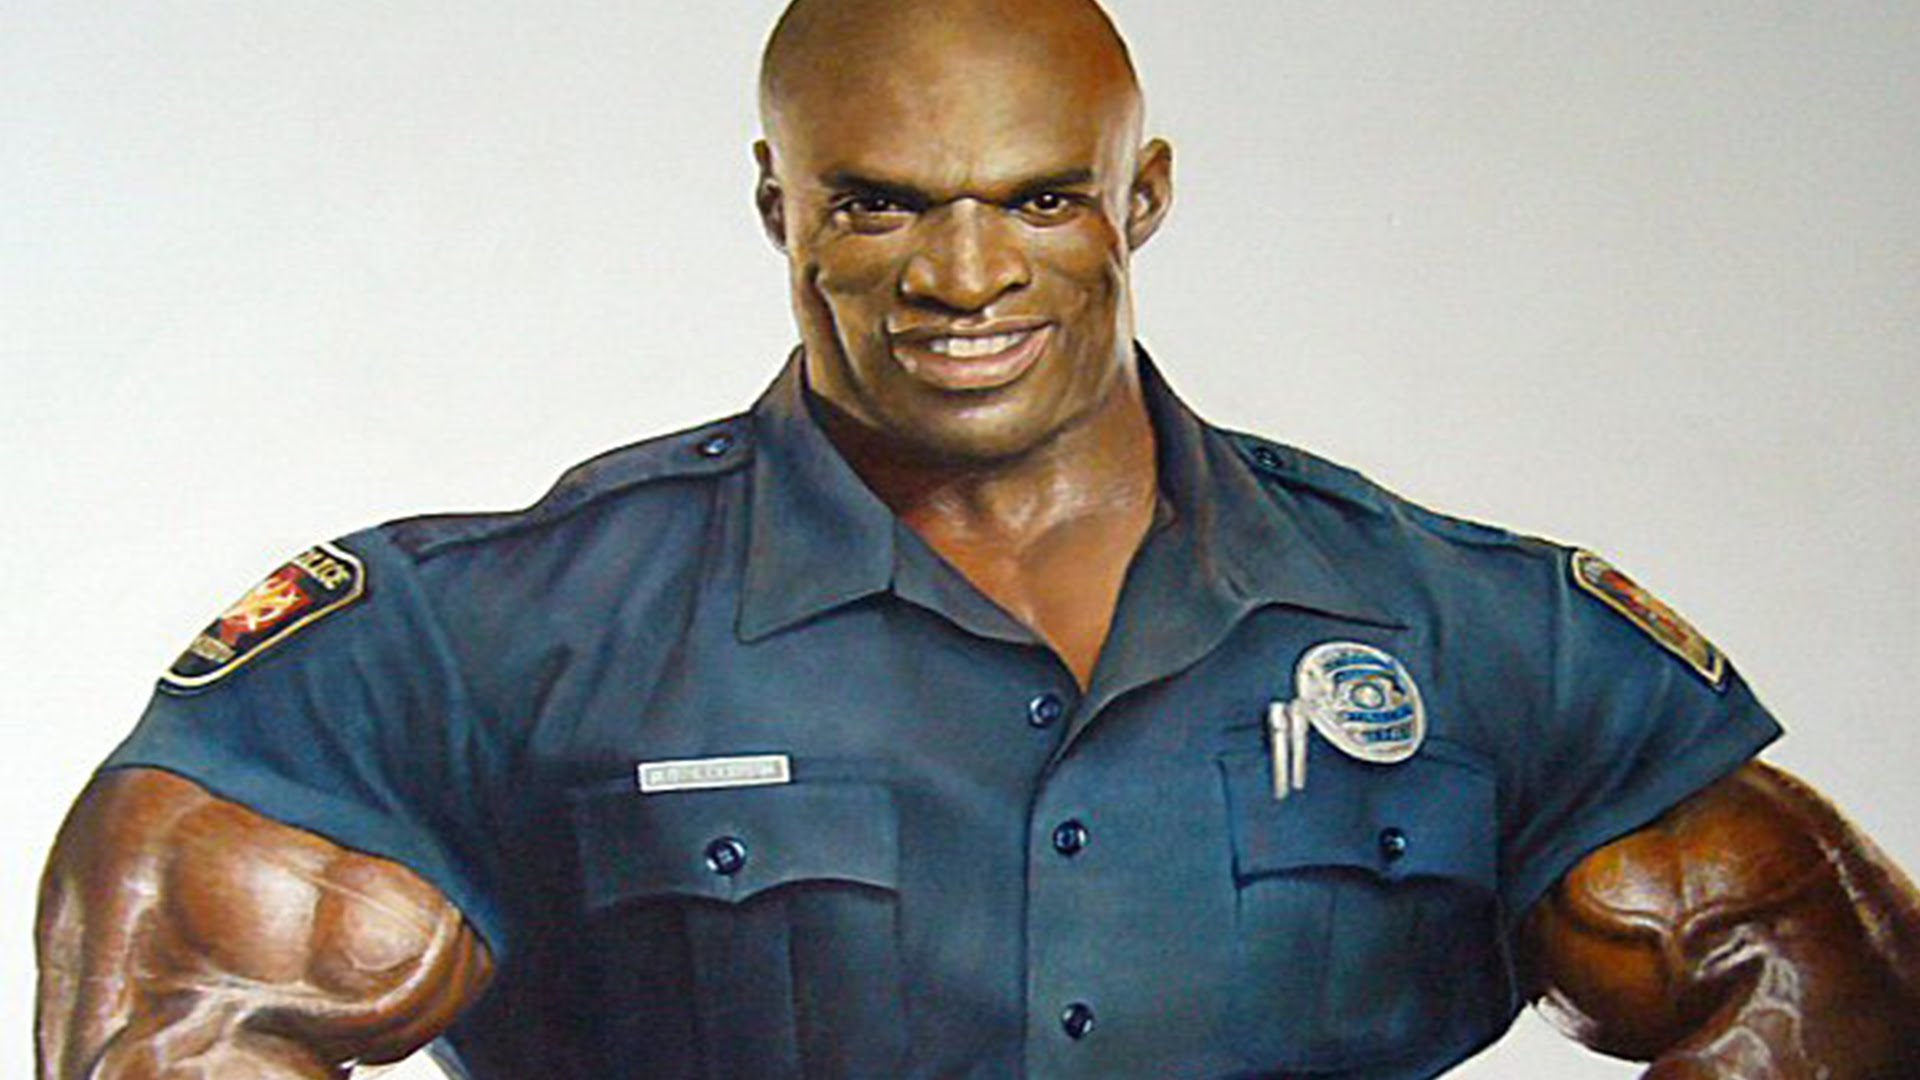 Темнокожий полицейский